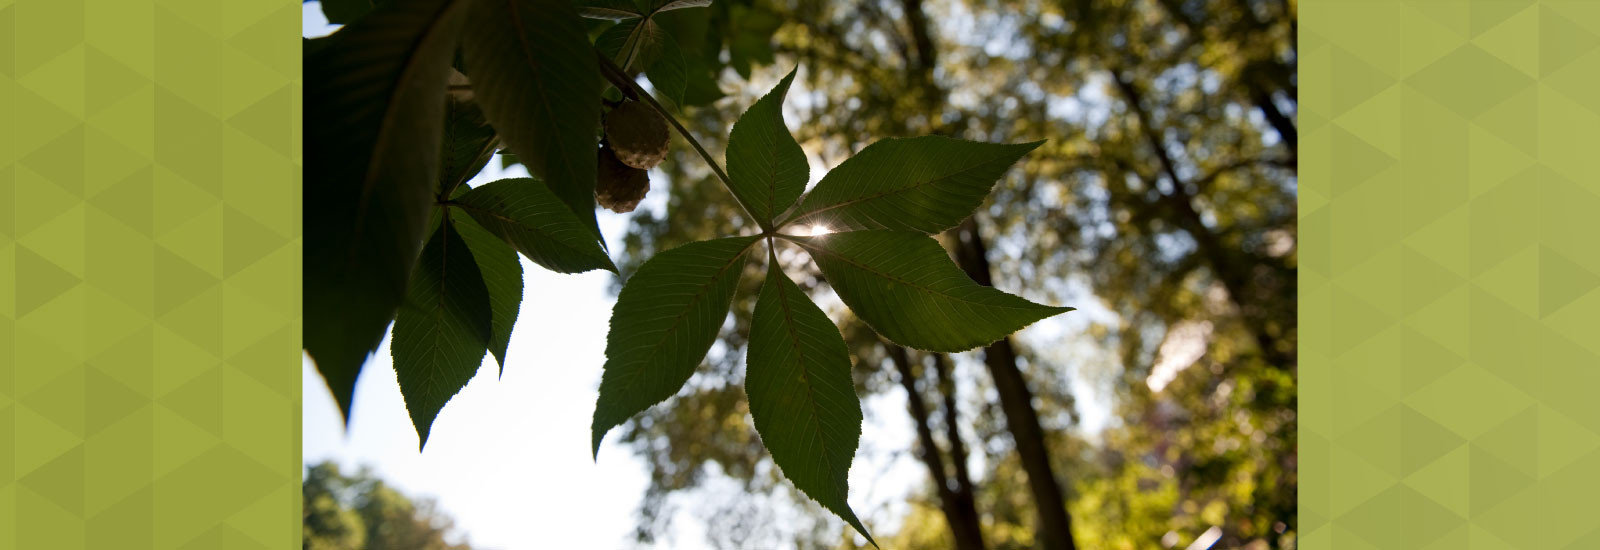 Sunshine through a buckeye tree leaf